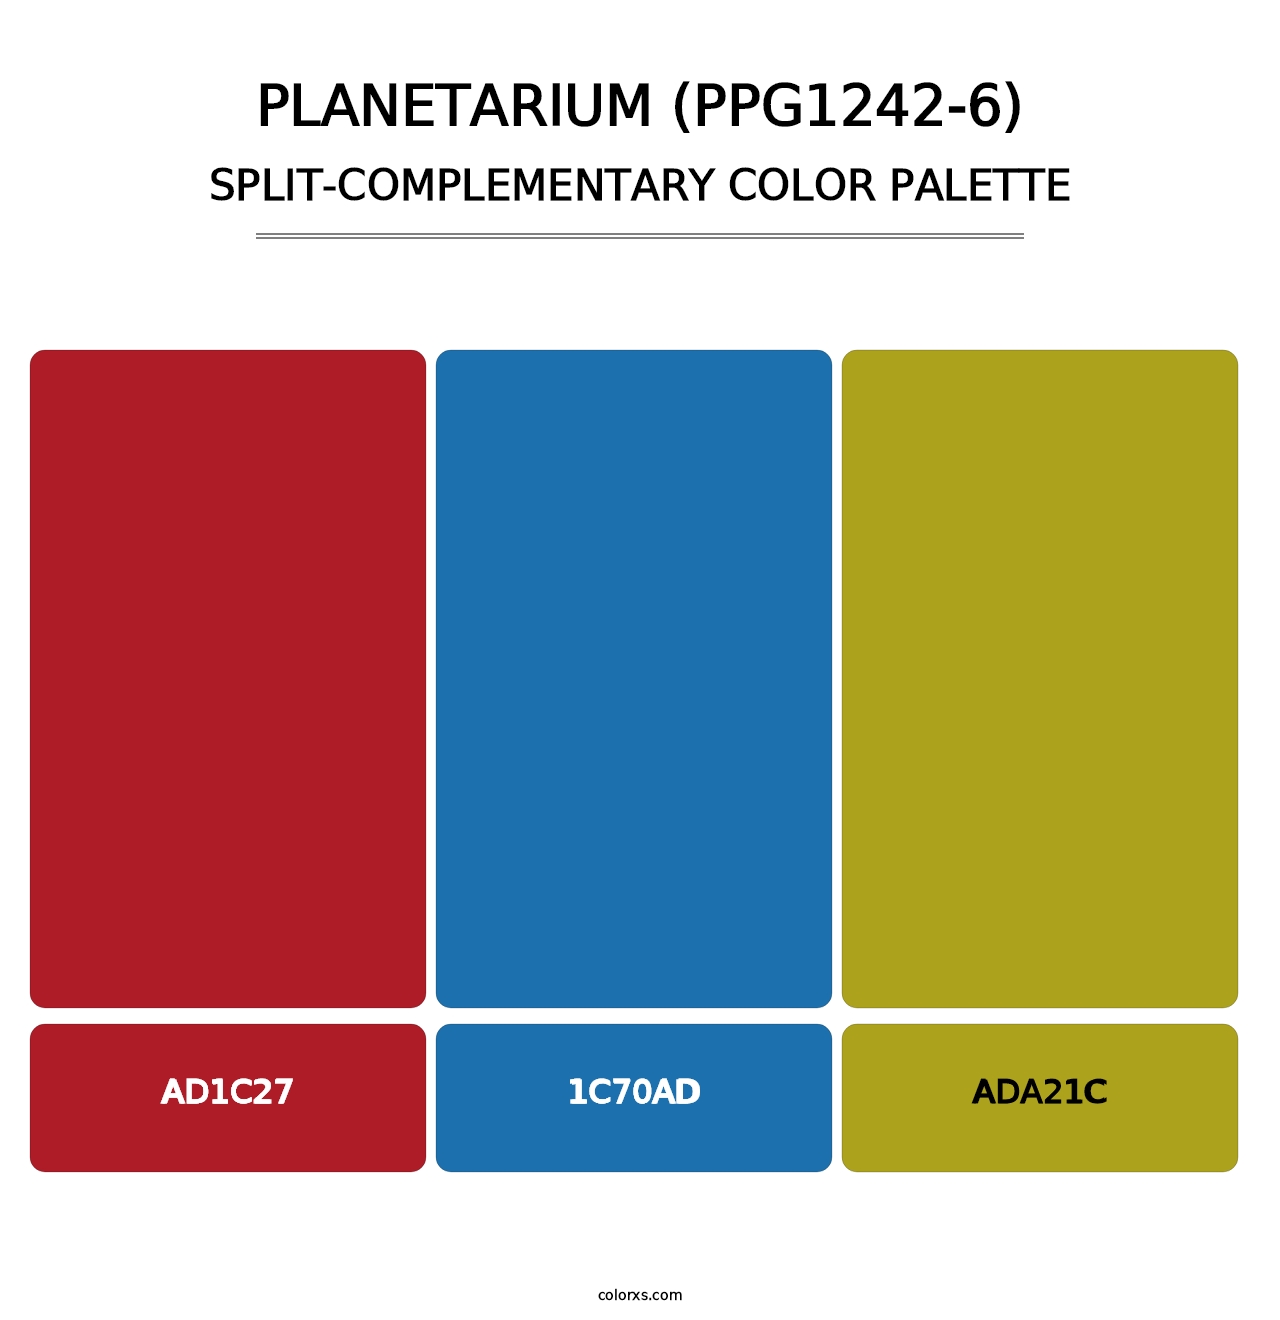 Planetarium (PPG1242-6) - Split-Complementary Color Palette